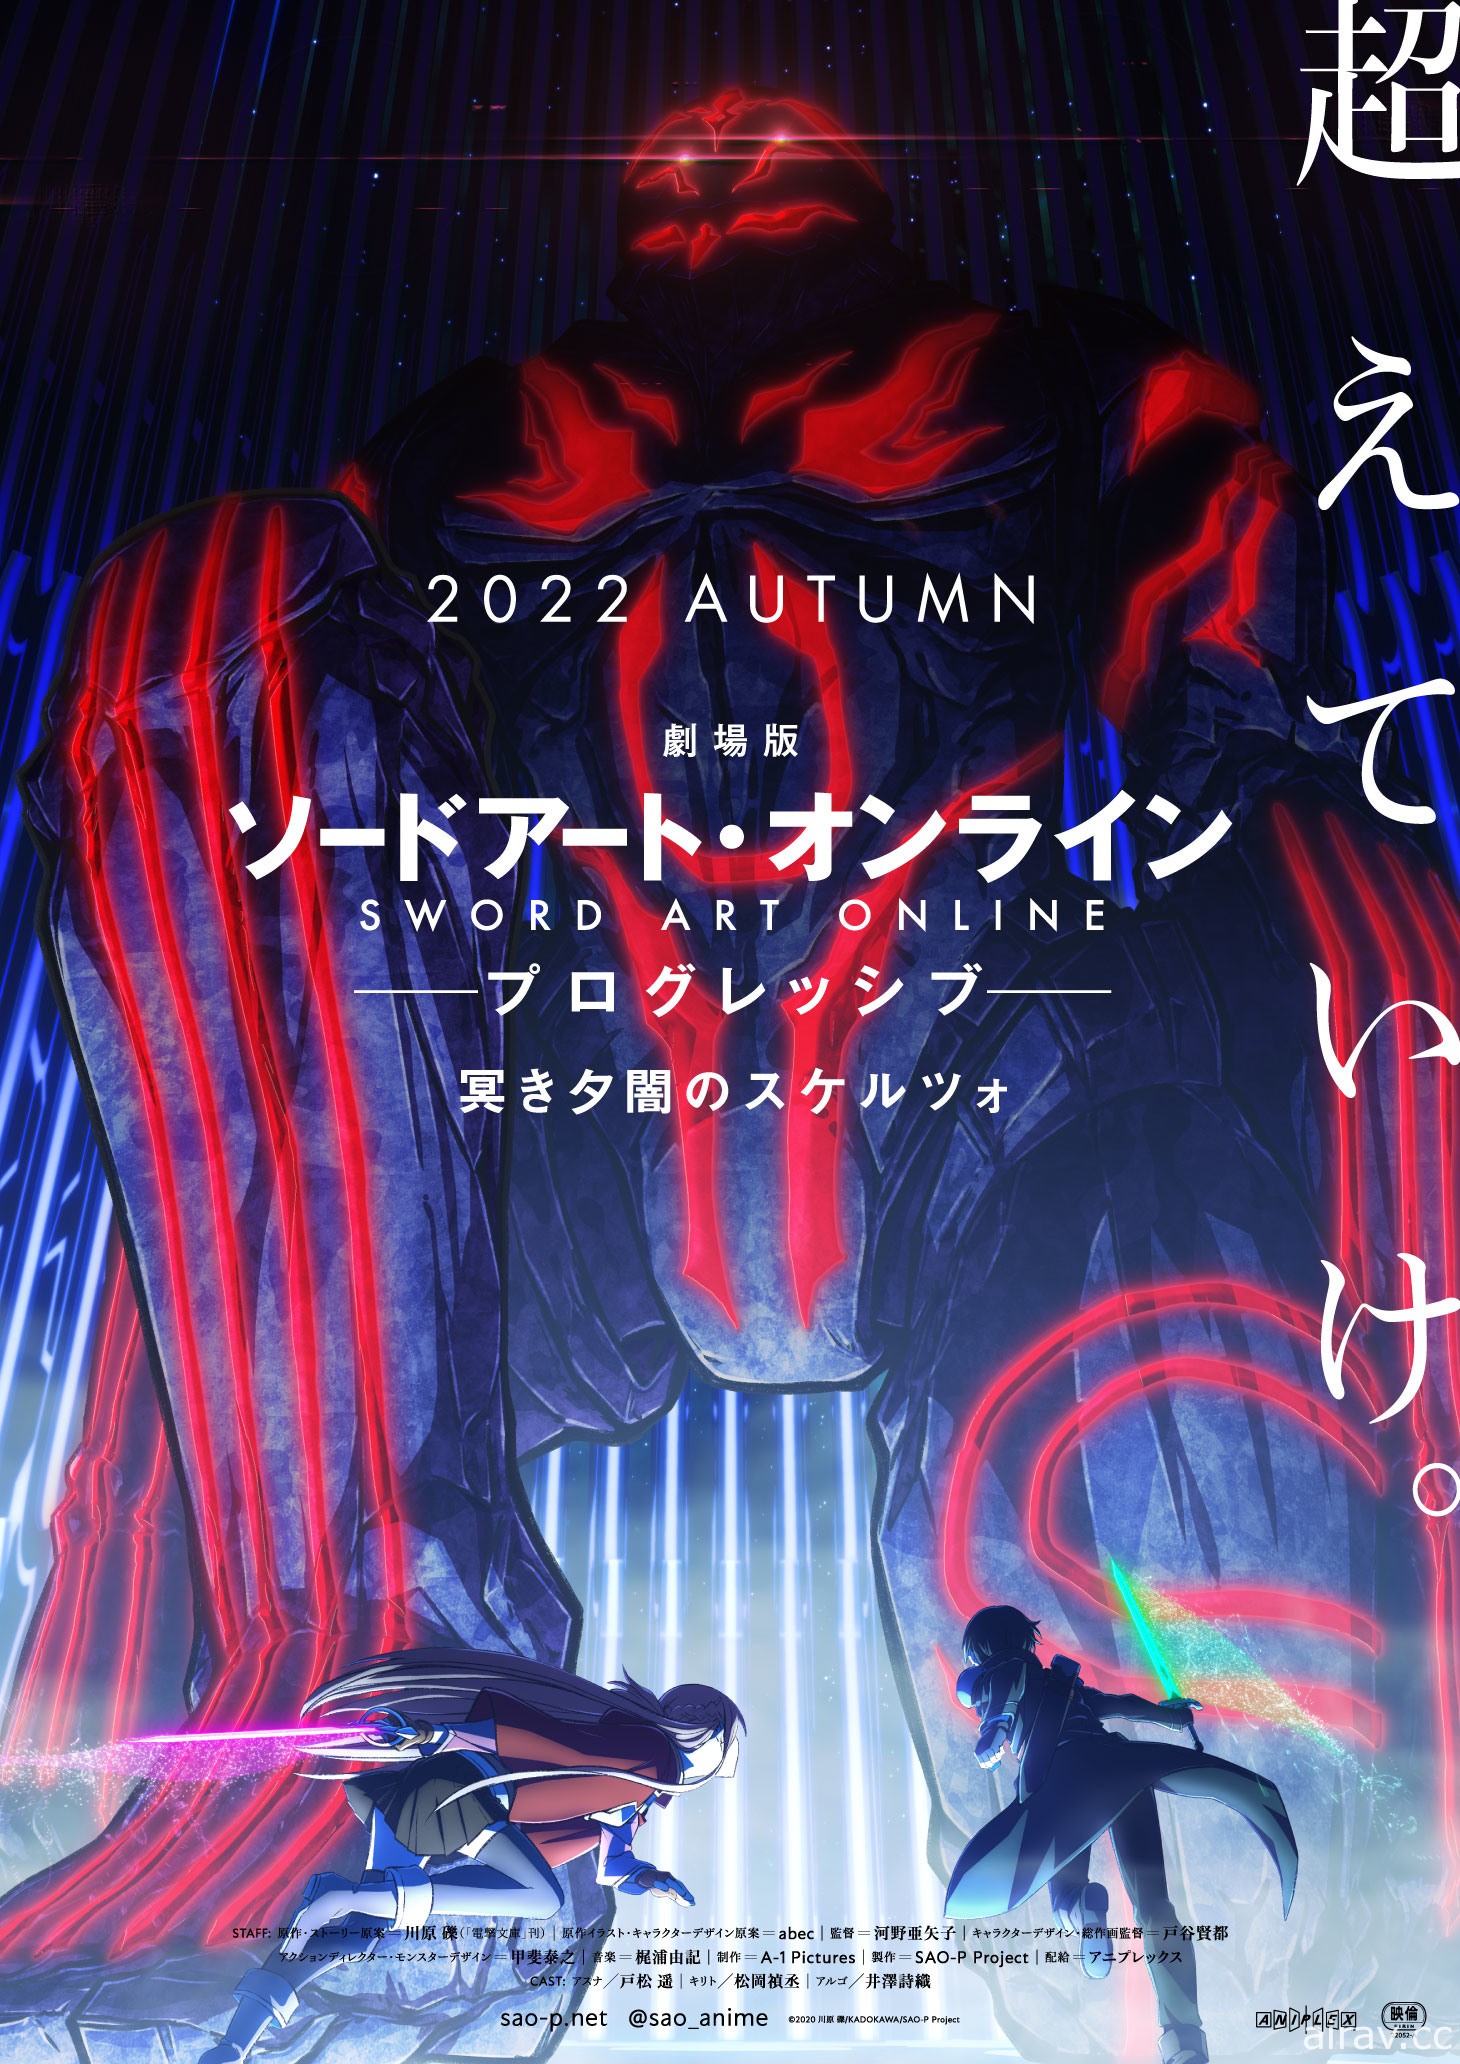 《刀劍神域 Progressive 陰沉薄暮的詼諧曲》公開概念視覺圖 今年秋季日本上映